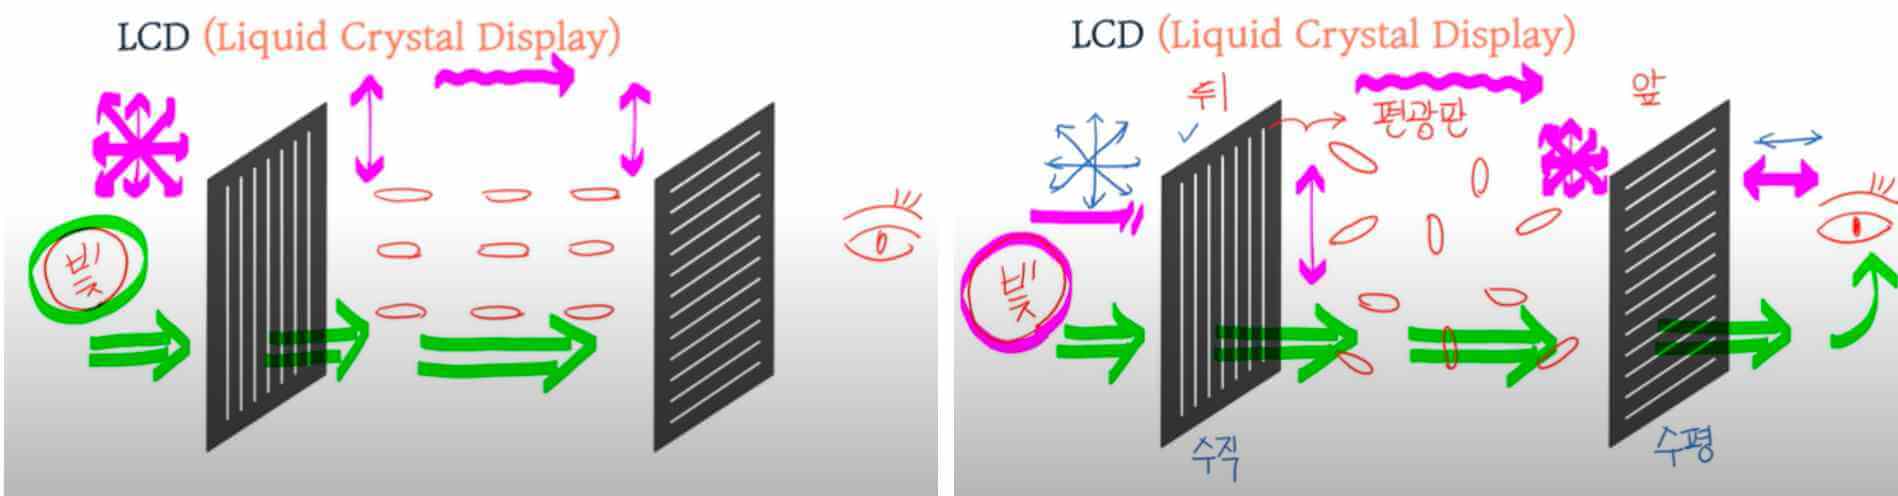 LCD 원리: 액정의 상태 변화로 빛이 POL 통과여부를 결정합니다.